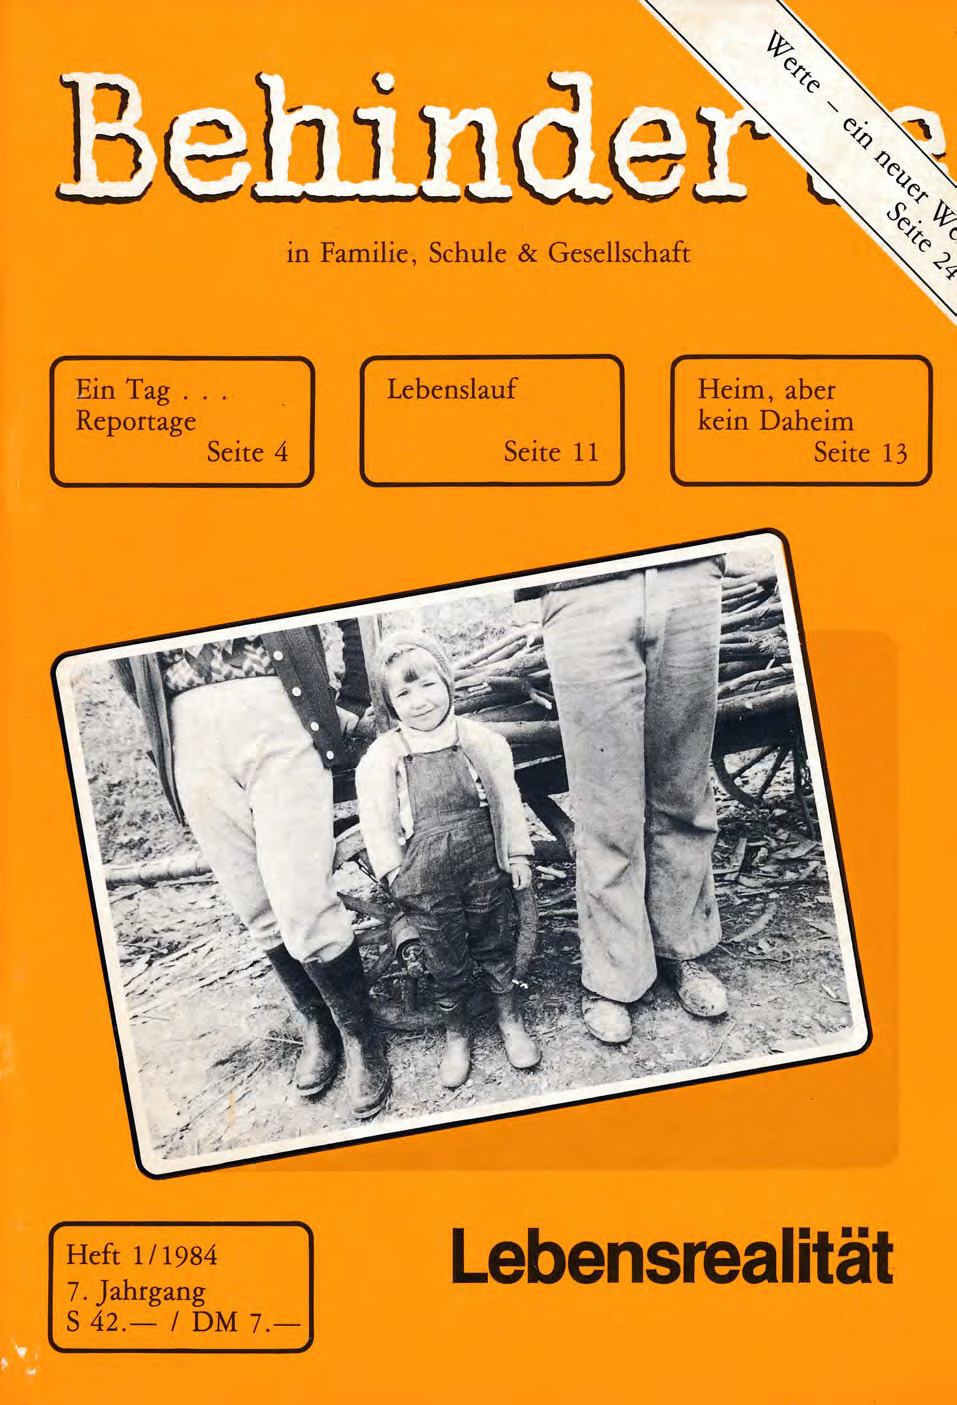 Titelbild der Zeitschrift BEHINDERTE MENSCHEN, Ausgabe 1/1984 "Lebensrealität"